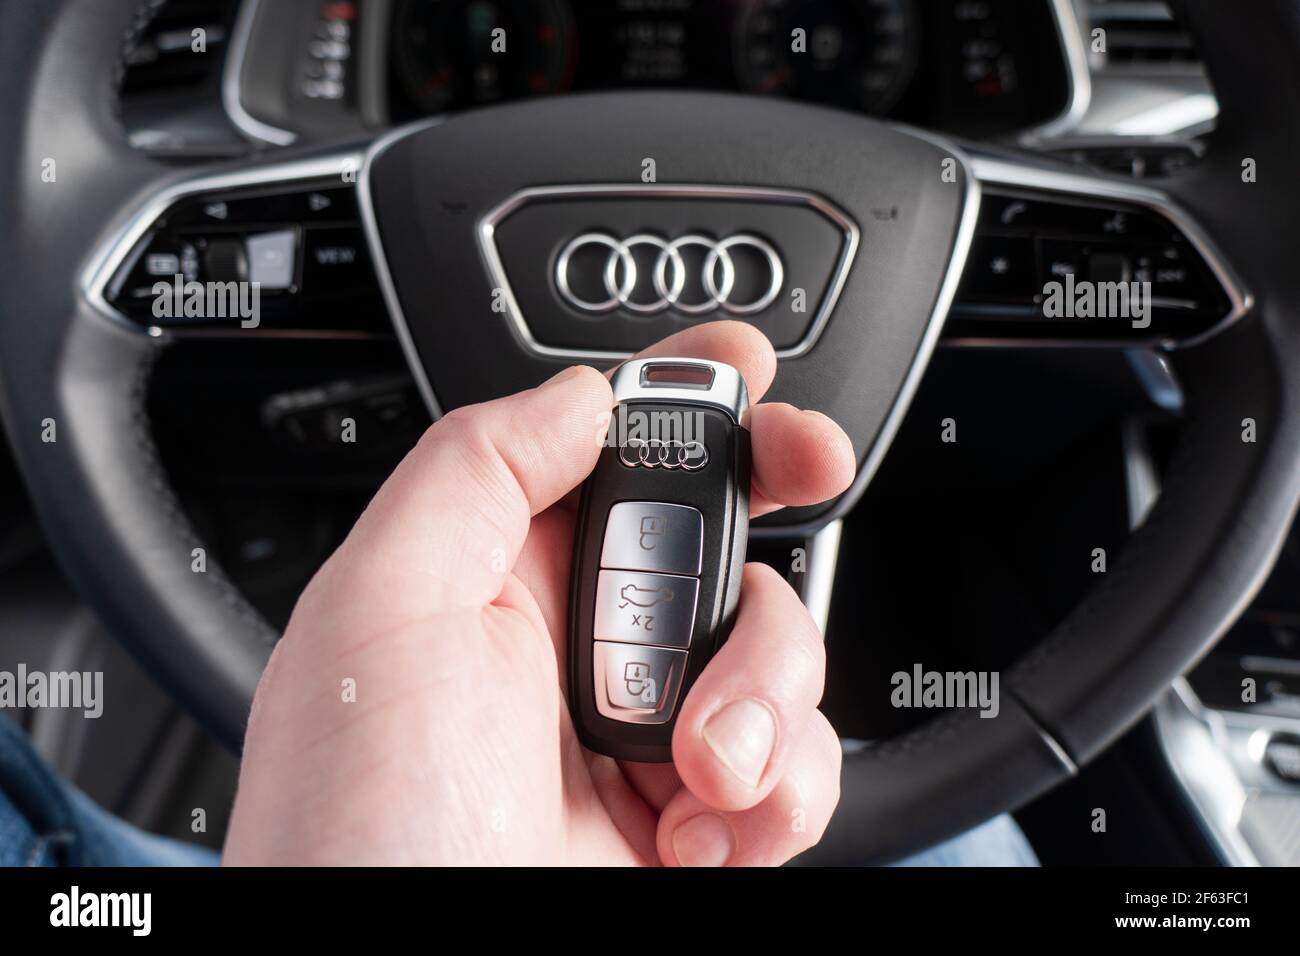 Sankt-Petersburg, Russie, 25 mars 2021 : gros plan des clés de voiture Audi A6 dans la main du conducteur. Intérieur en cuir noir d'une voiture moderne. Intérieur de l'Audi A6 S-Line Banque D'Images